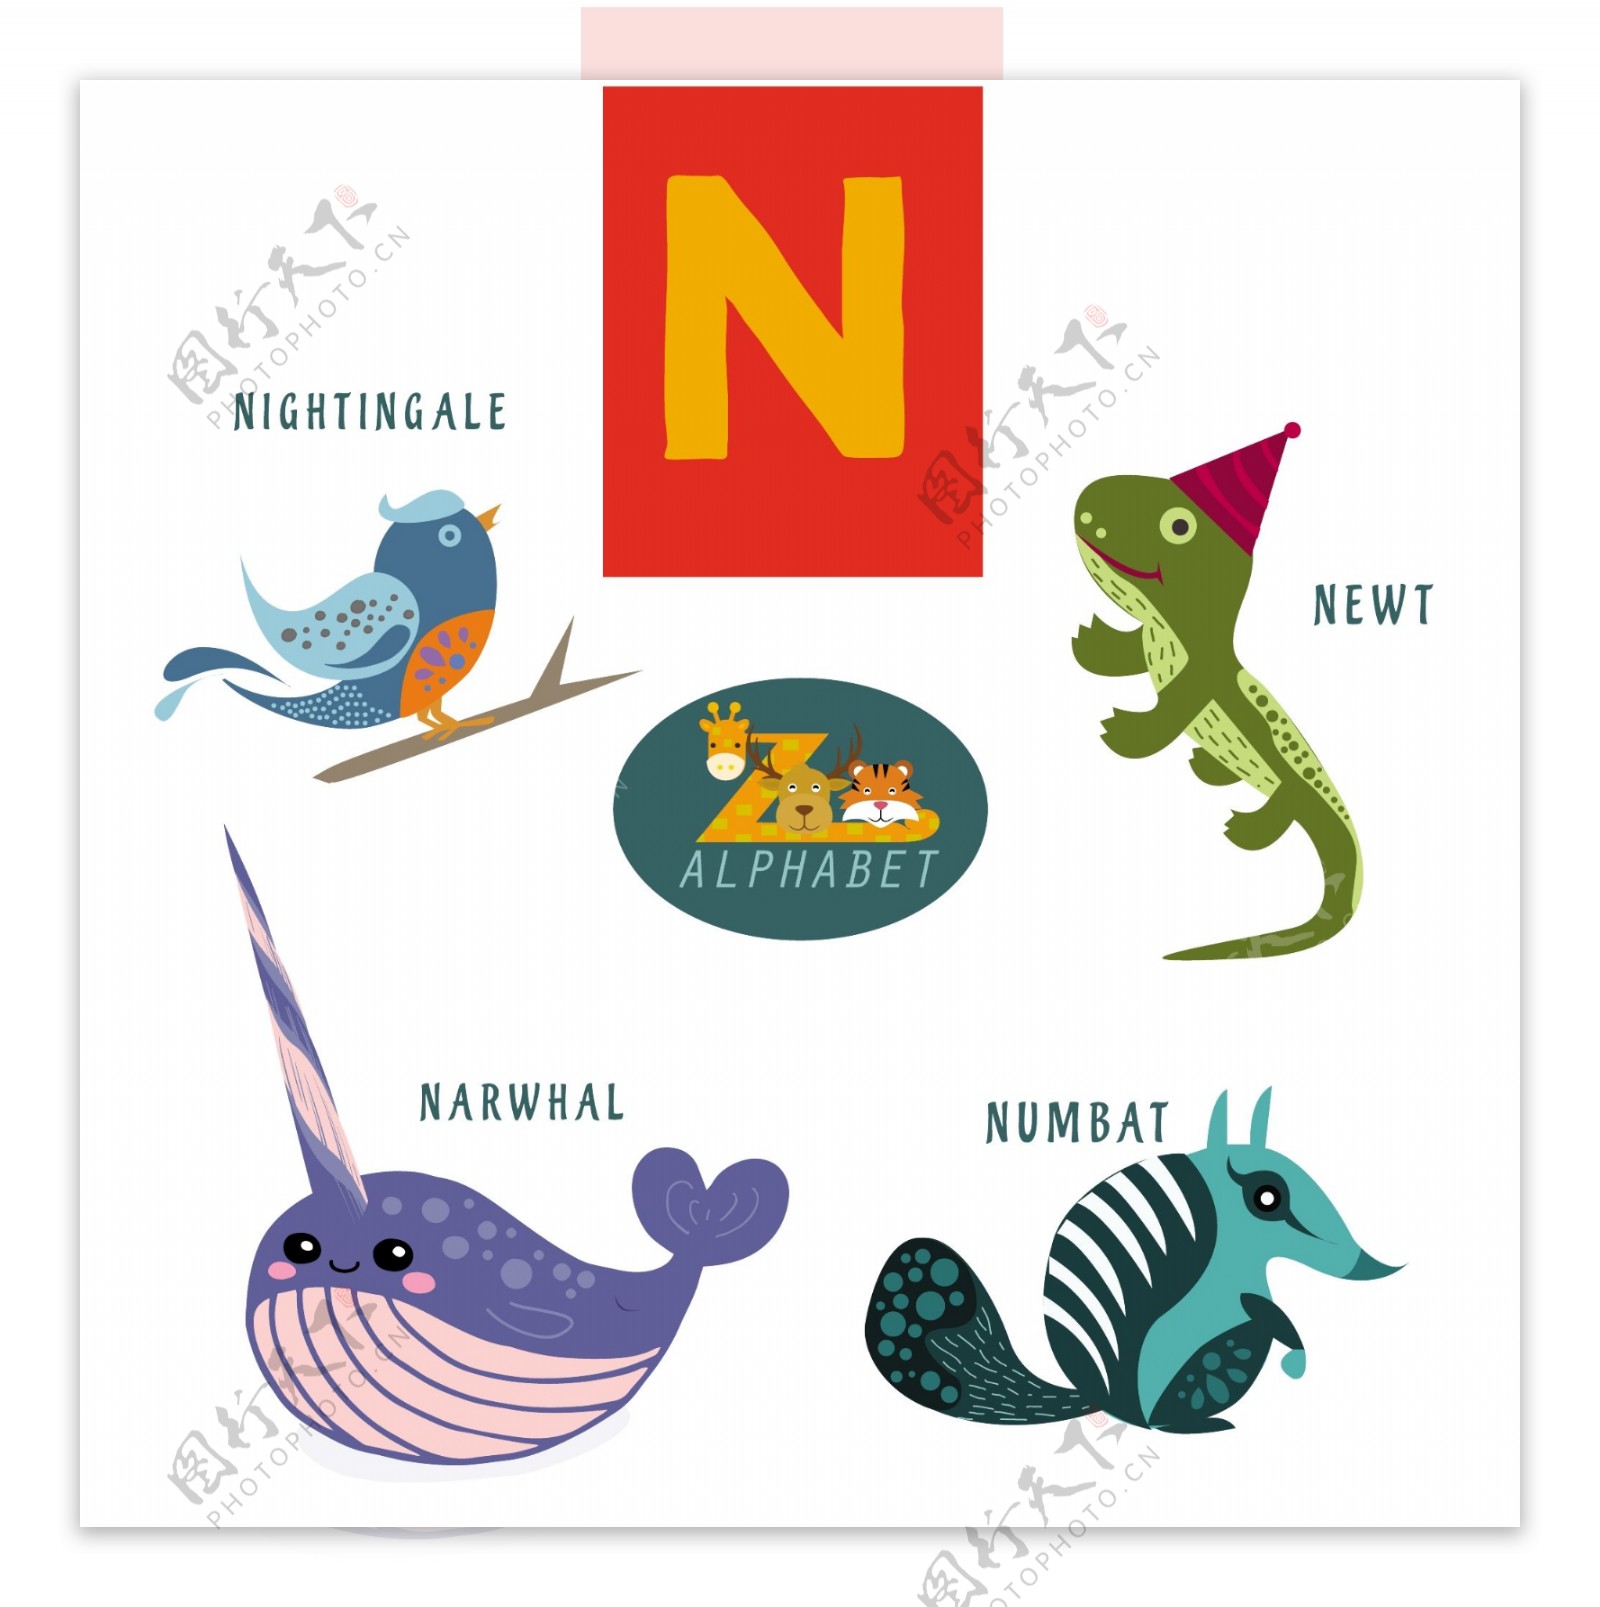 N信与彩色平面设计风格动物自由向量